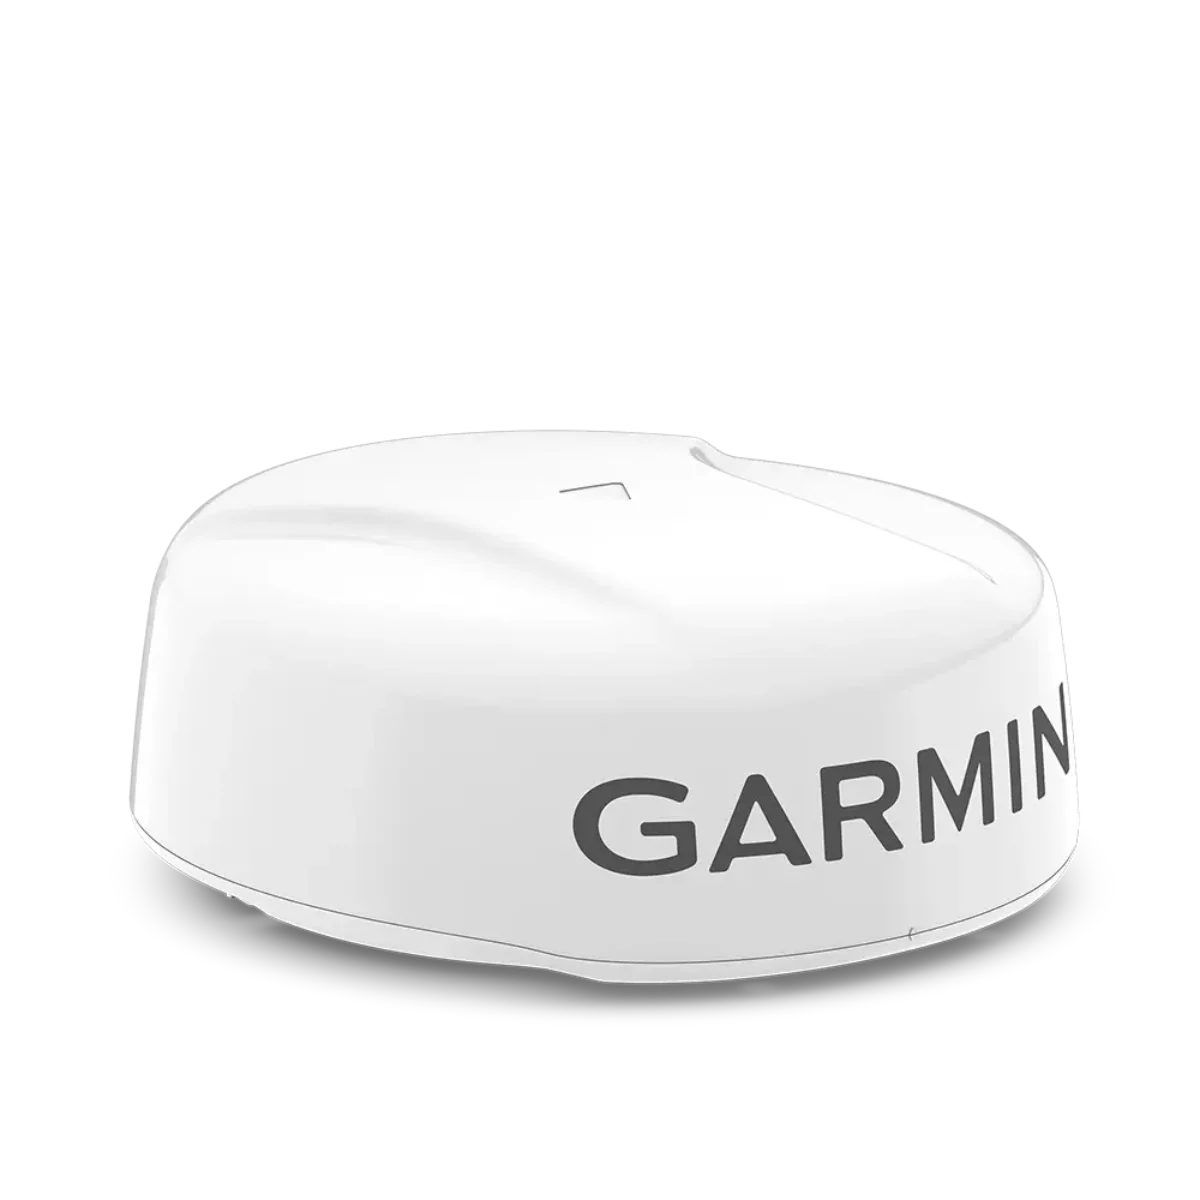 Garmin GMR Fantom 24x Dome Radar in white